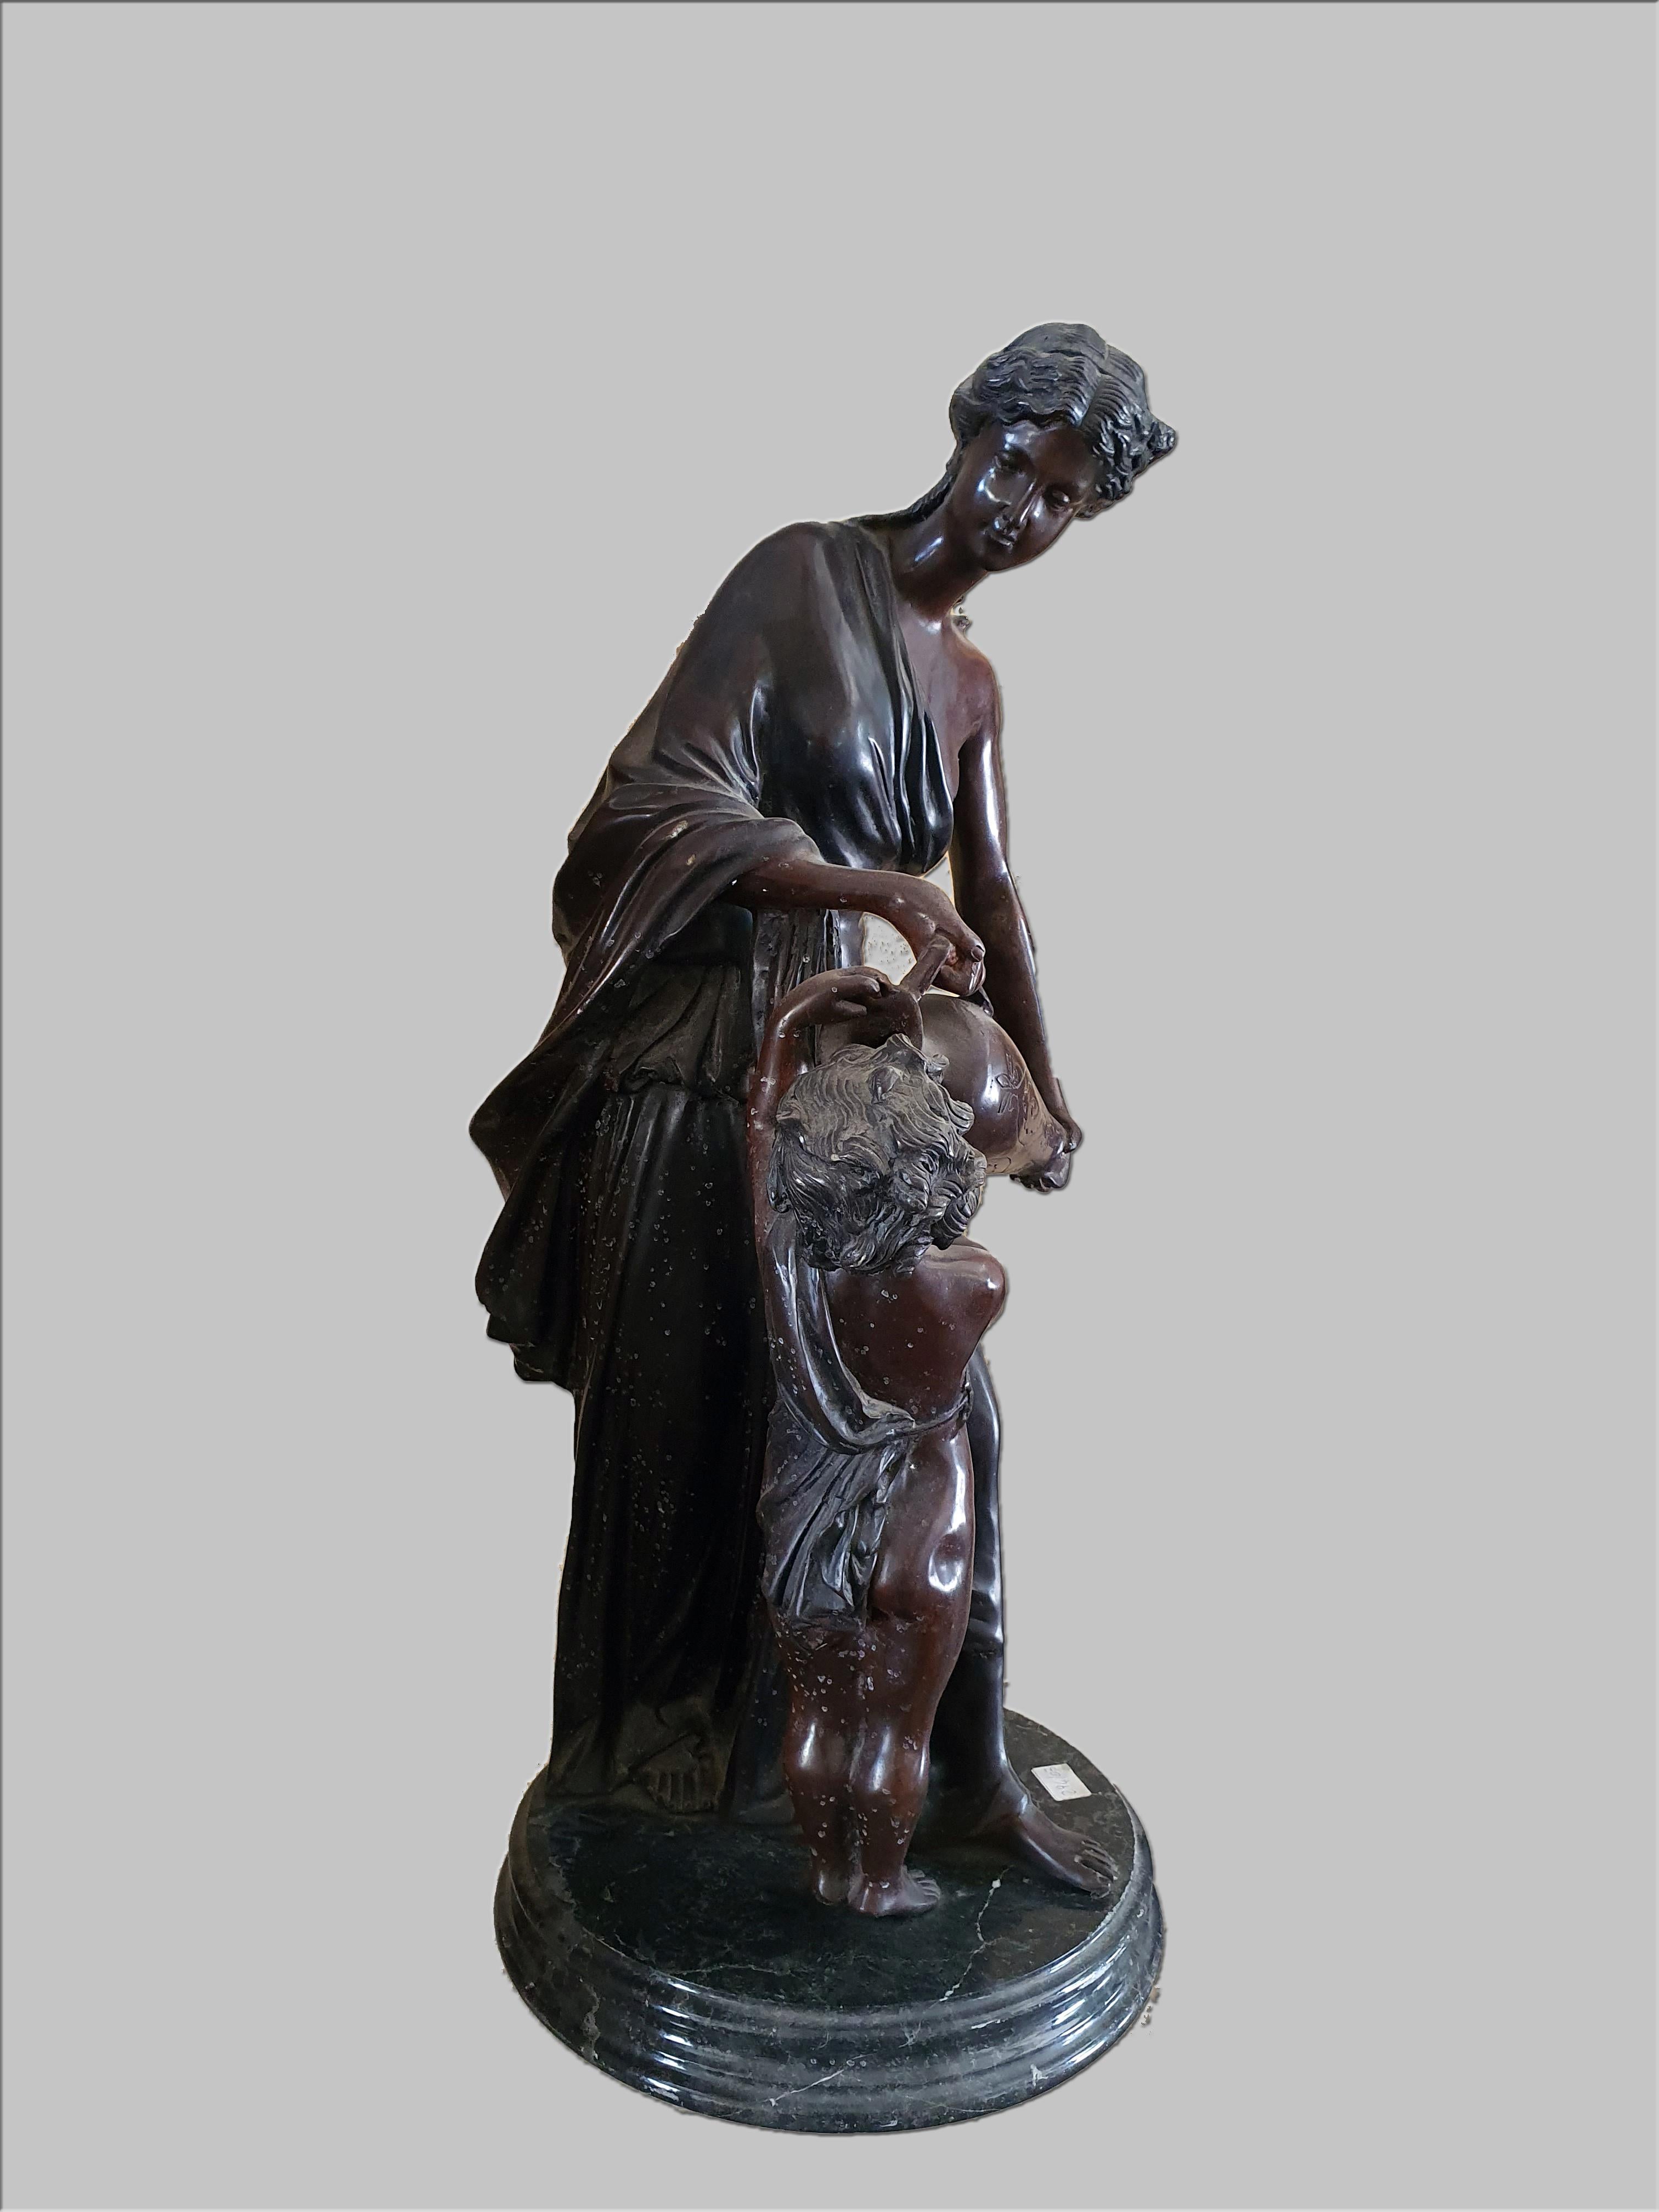 Patinierte Bronzeskulptur, die eine Dame mit einem Ausgießer in der Hand und ein Kind darstellt. Sockel aus Marmor.
Hergestellt von Hippolyte Francois Moreau.